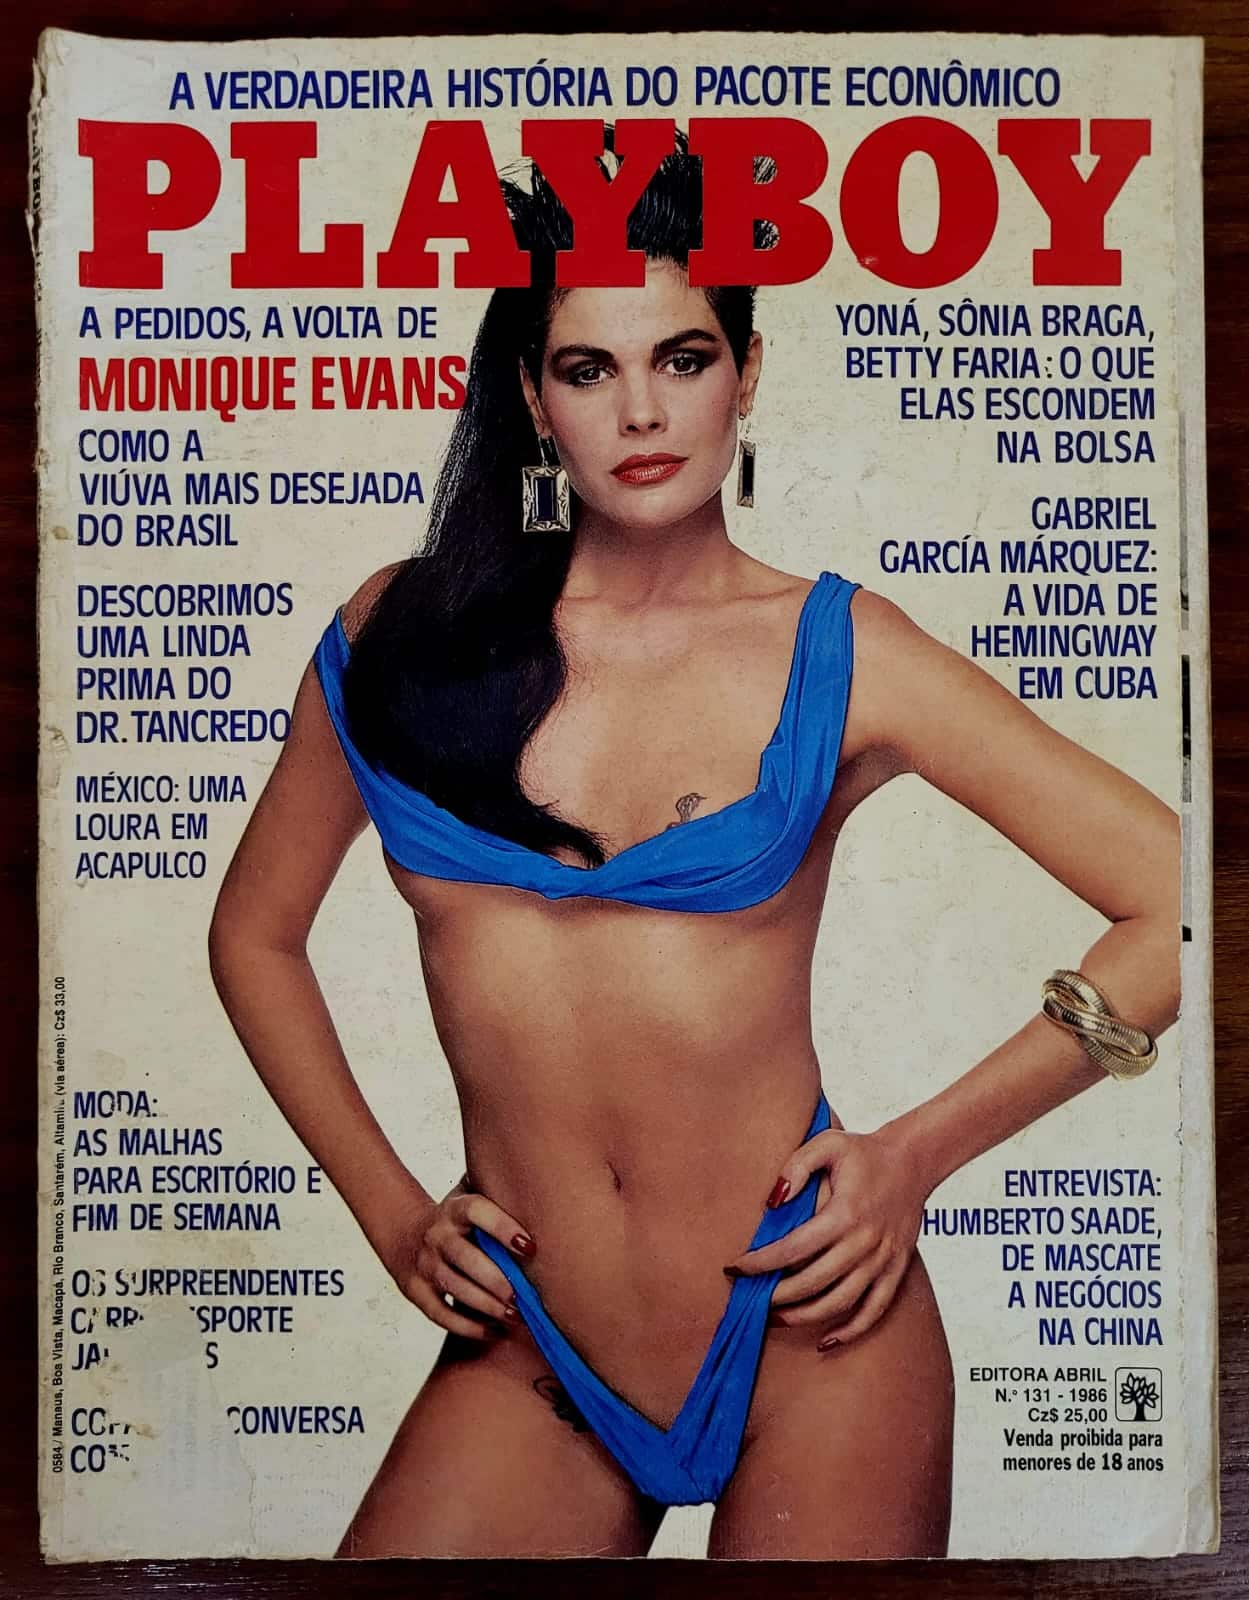 Playboy No 131 Monique Evans 1 Casa do Colecionador